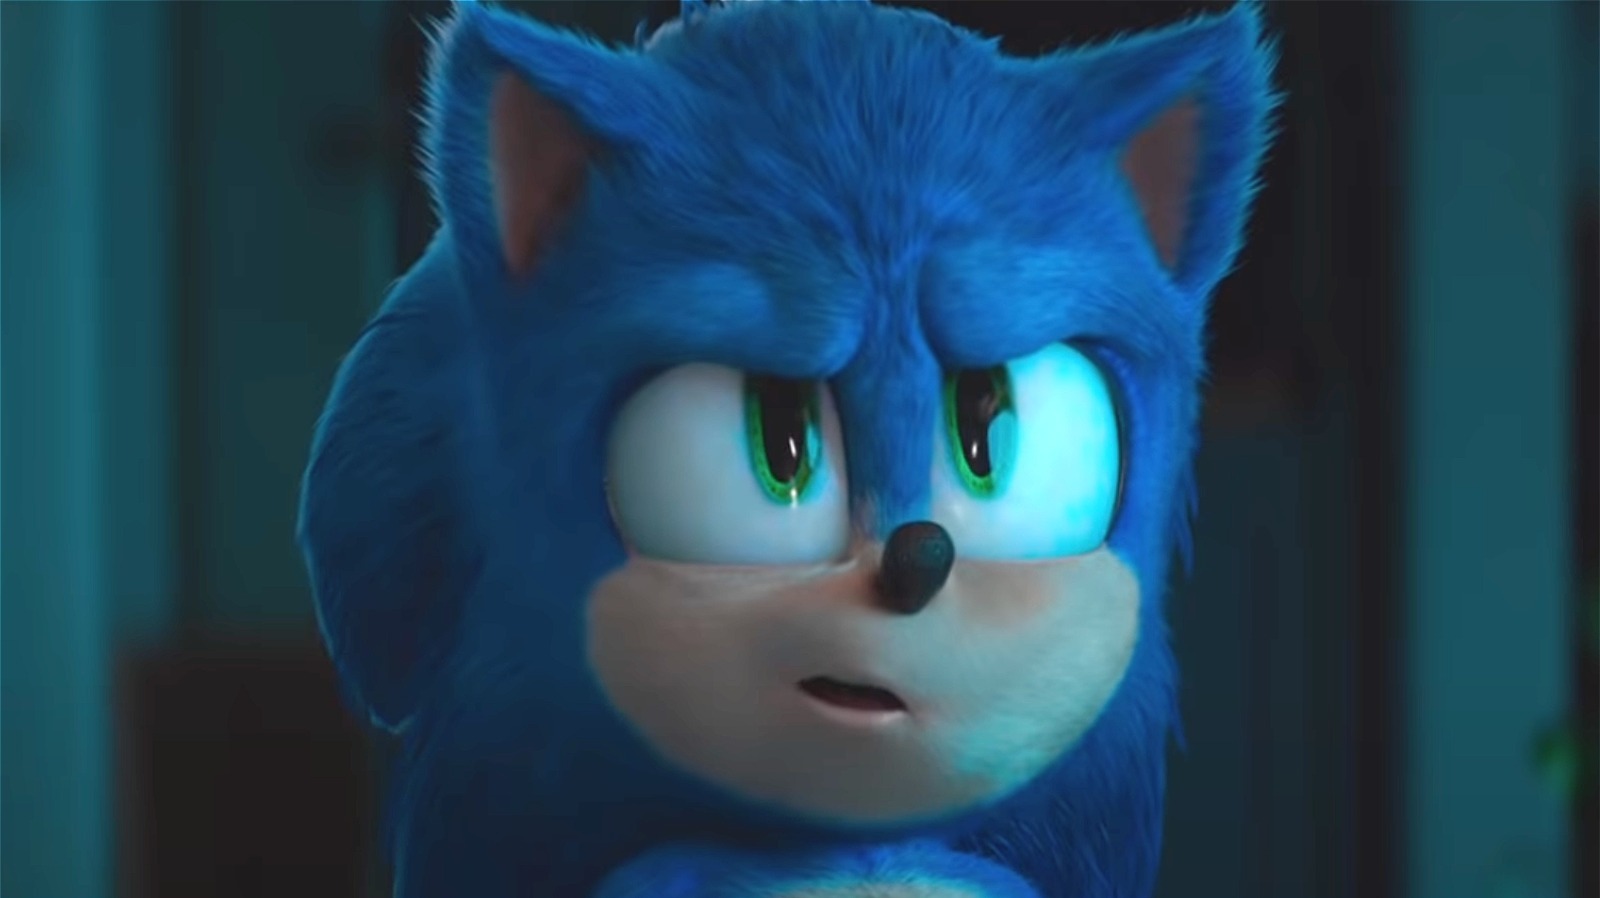 Sonic 2: foto do set mostra o visual de Knuckles e Tails